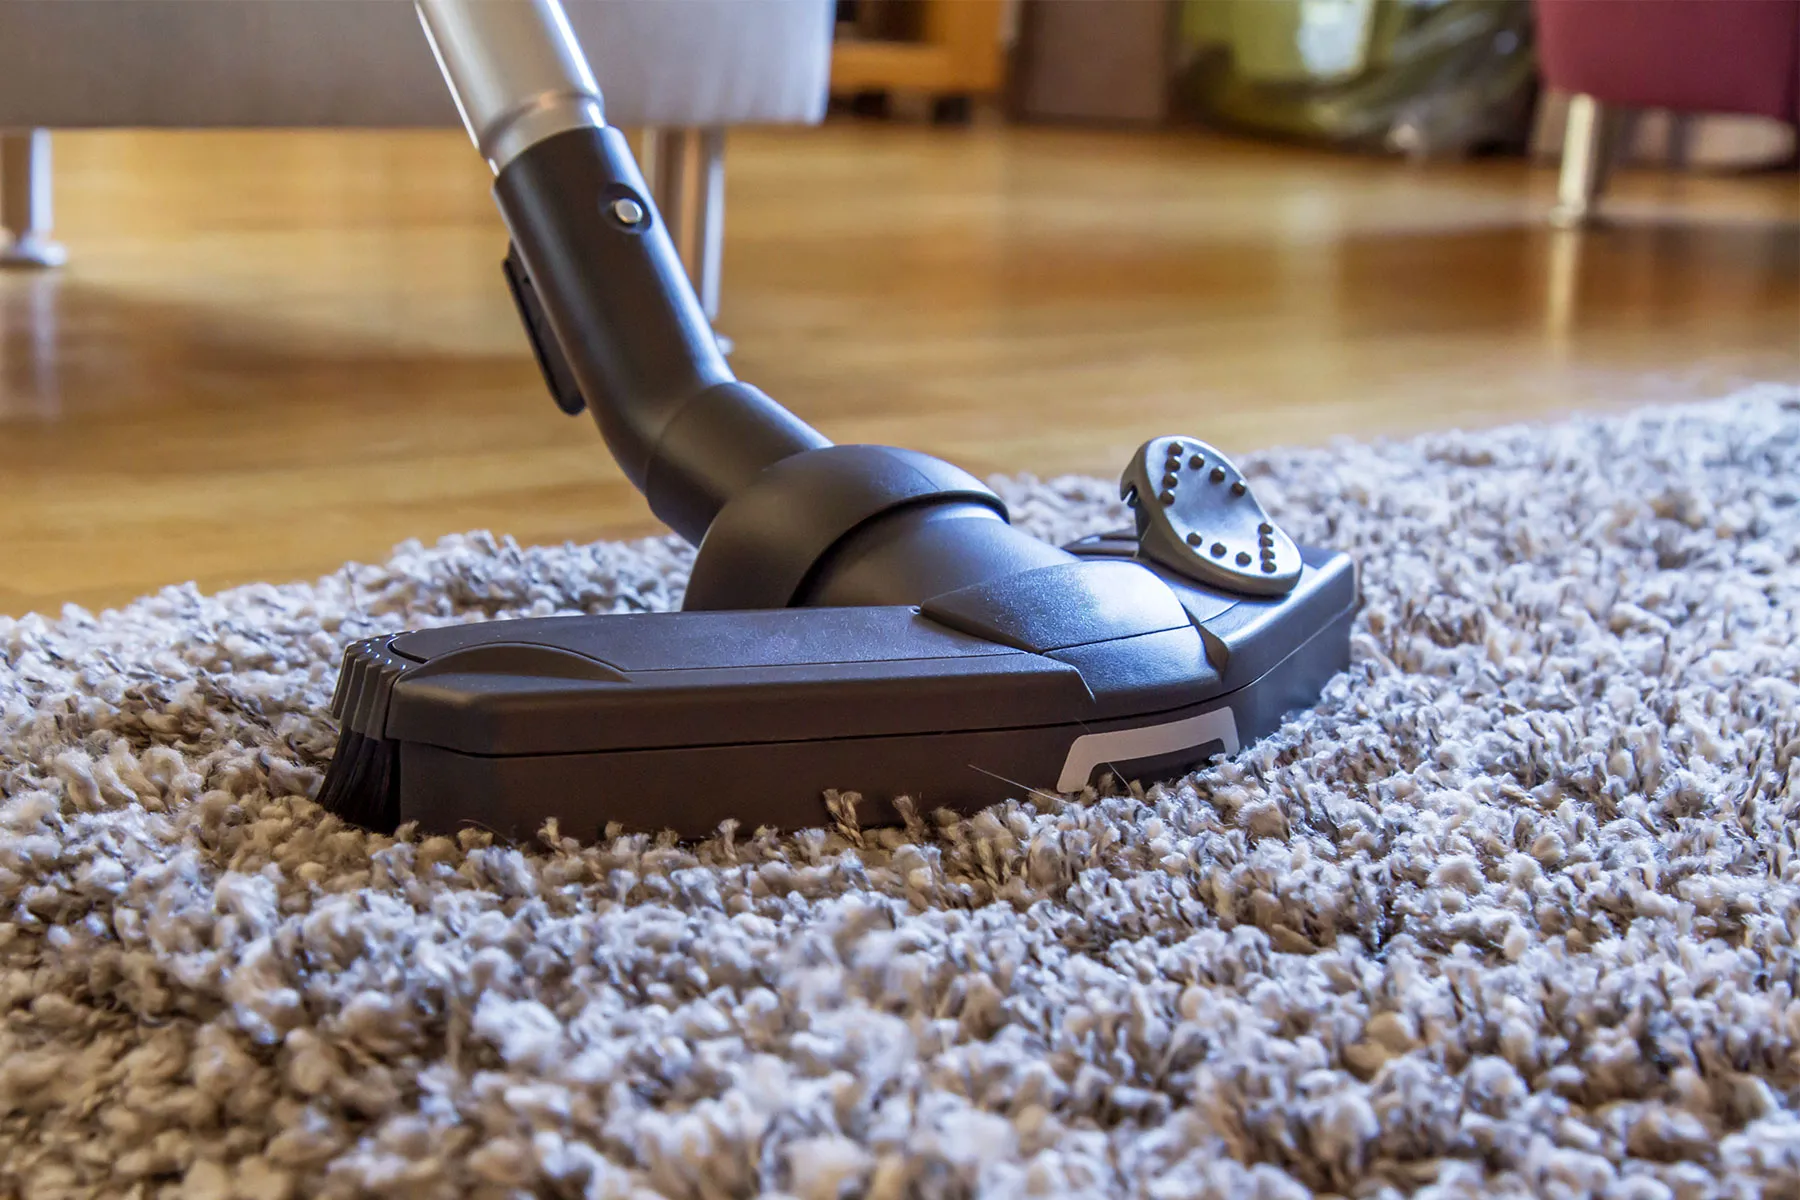 photo of vacuuming rug close up